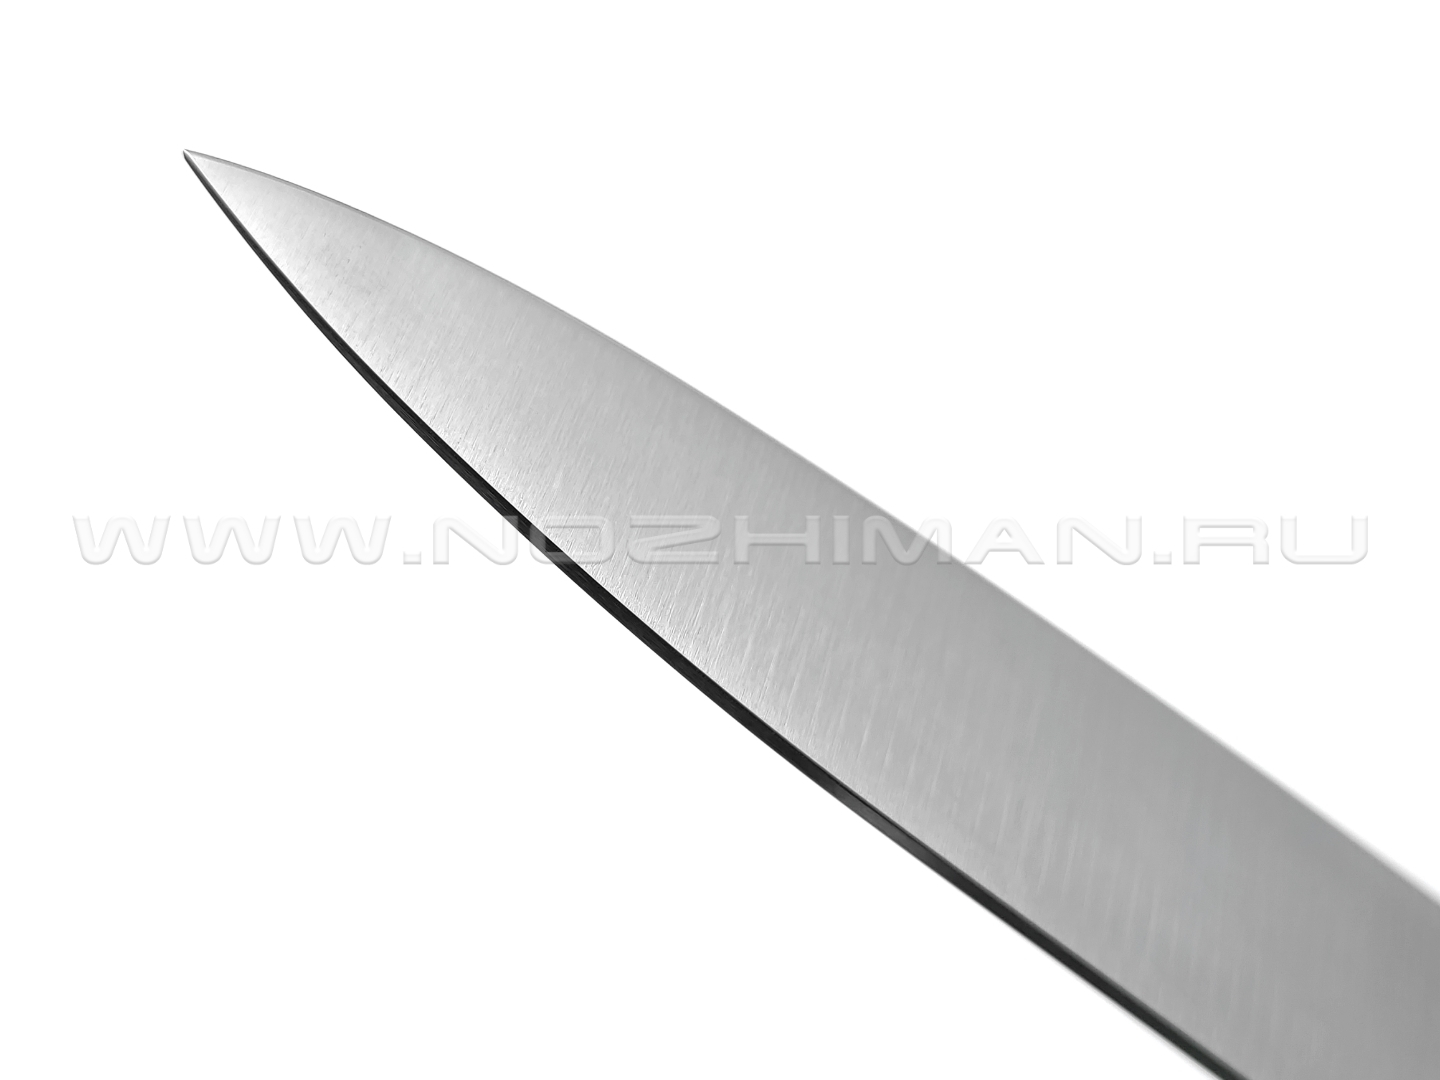 Кухонный нож Due Cigni 2C 1002 сталь X50CrMoV15, рукоять Polypropylene